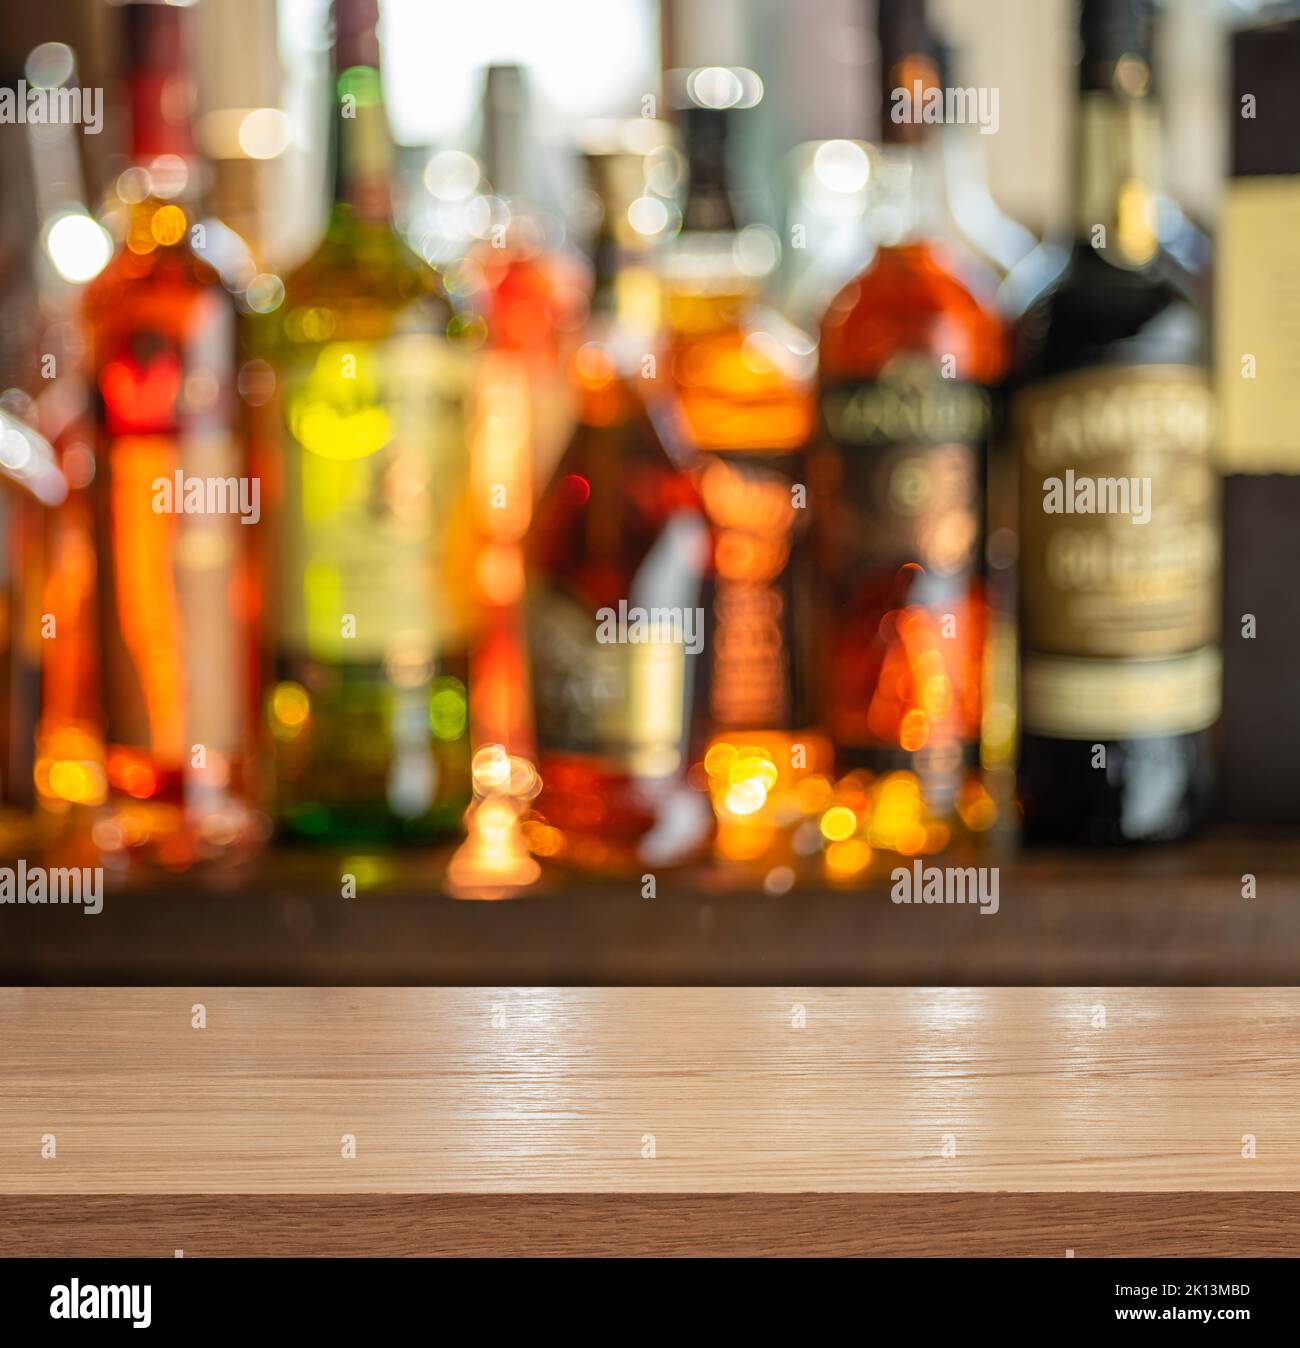 Plateau de table en bois et de belles étagères de bokeh avec des bouteilles d'alcool à l'arrière-plan du pub. Concept de bar. Banque D'Images